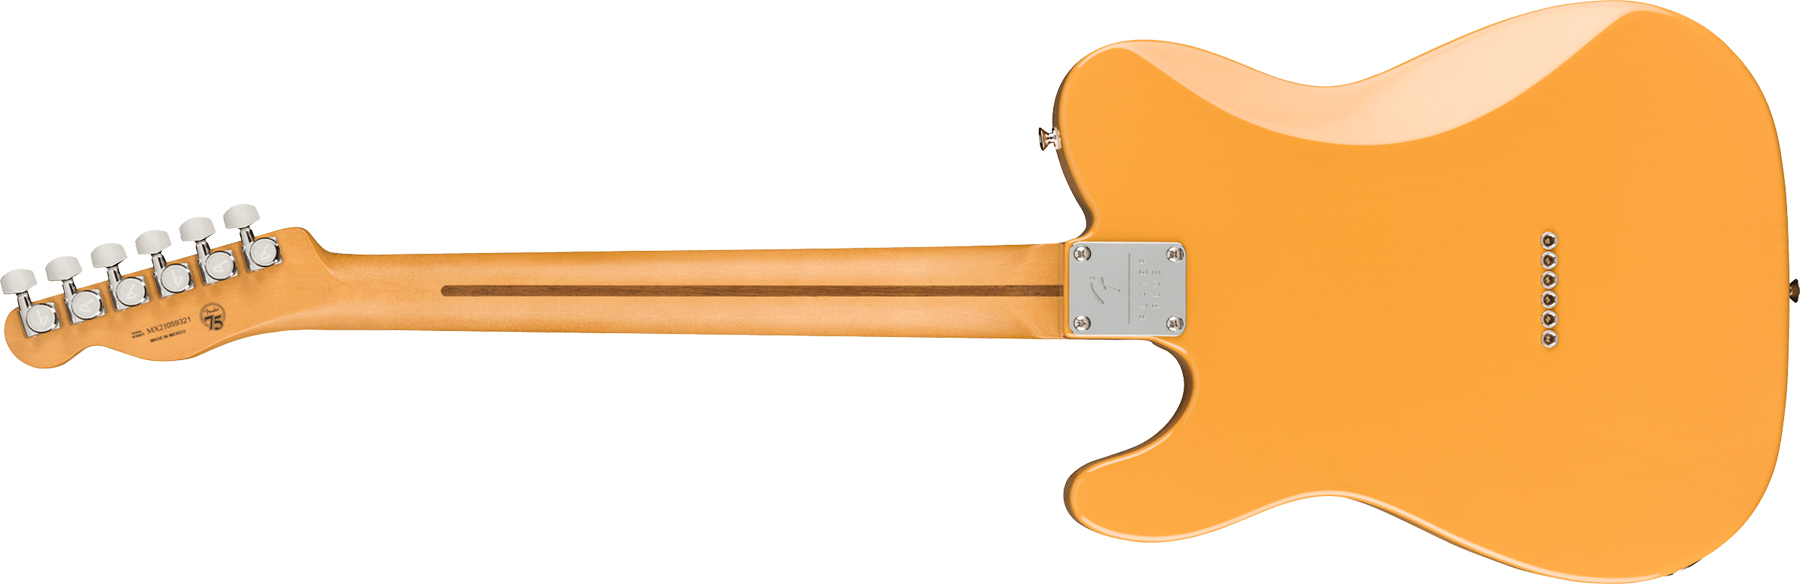 Fender Tele Player Plus Nashville Mex 3s Ht Mn - Butterscotch Blonde - Tel shape electric guitar - Variation 1